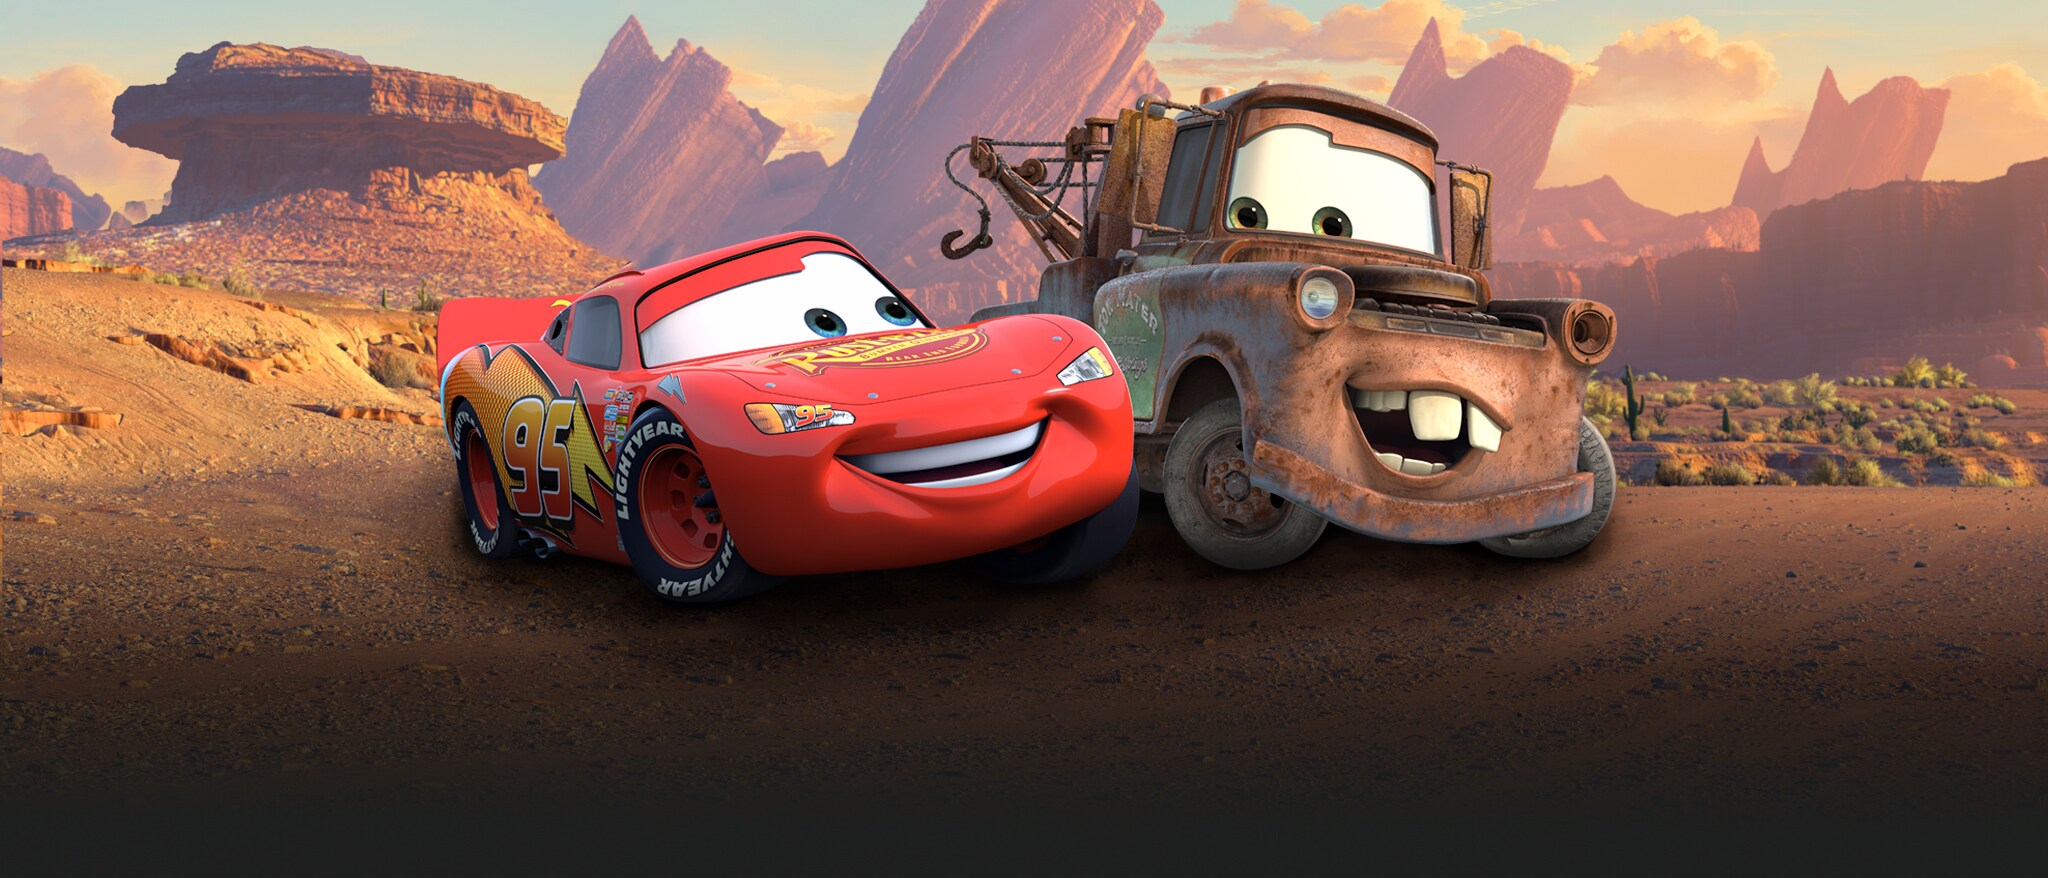 Hero - Disney Cars - Homepage